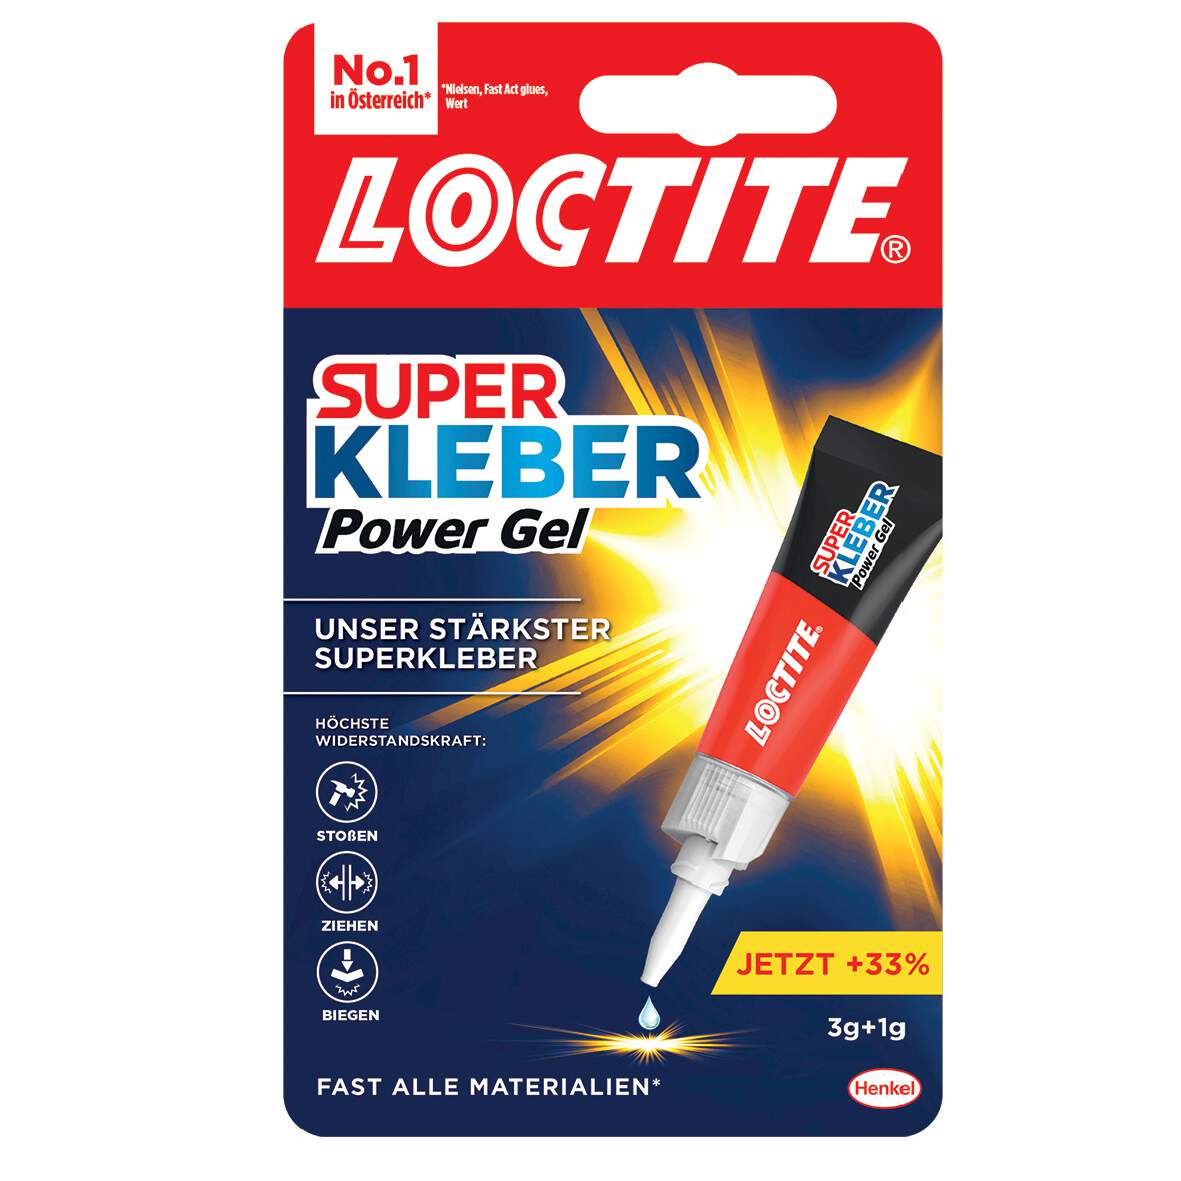 1035615 - Superkleber Power Gel 4g